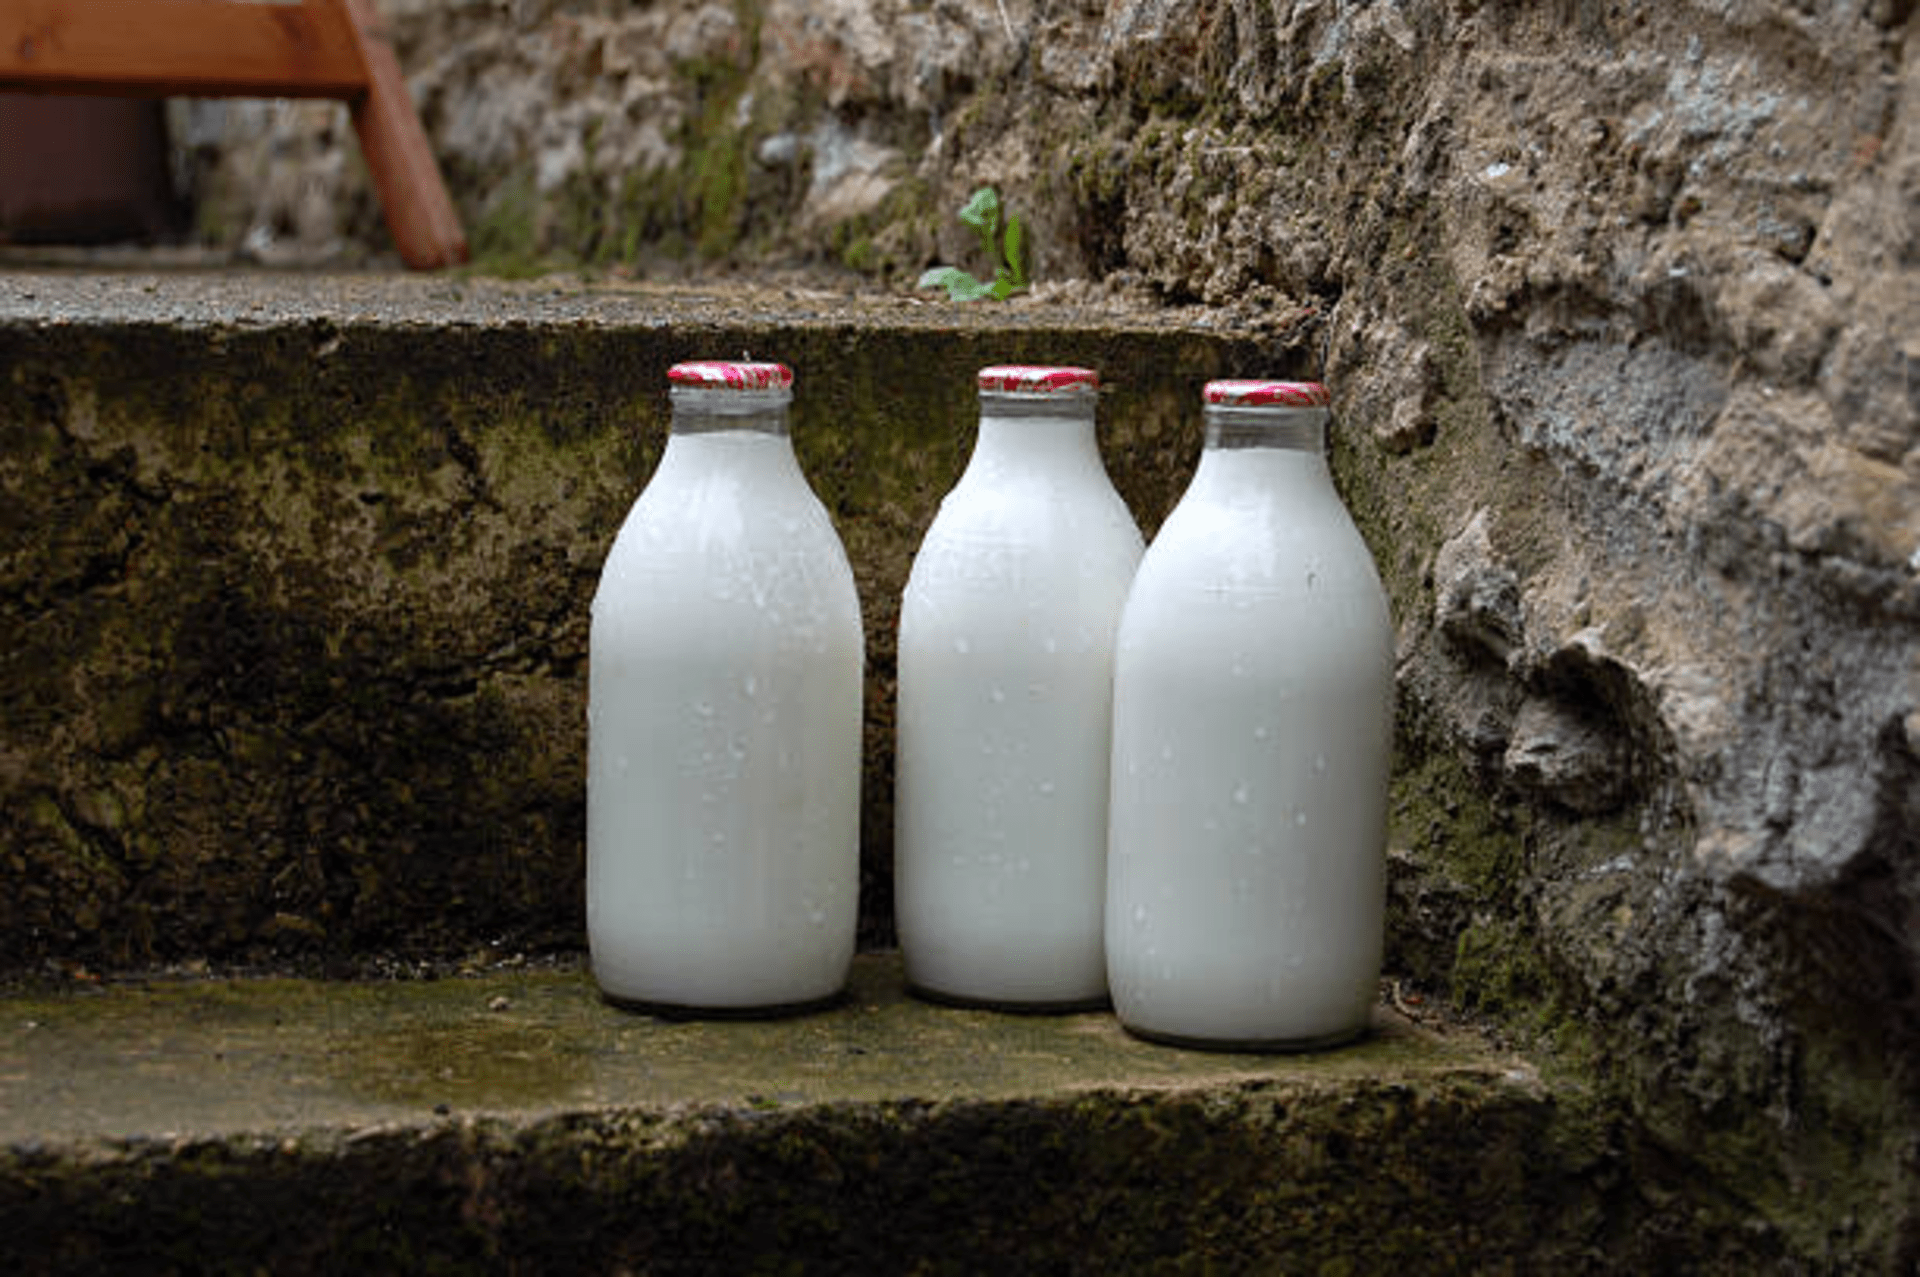 Susu dikenal sebagai salah satu minuman sehat yang kaya akan nutrisi penting bagi tubuh manusia, salah satunya kesehatan kulit/